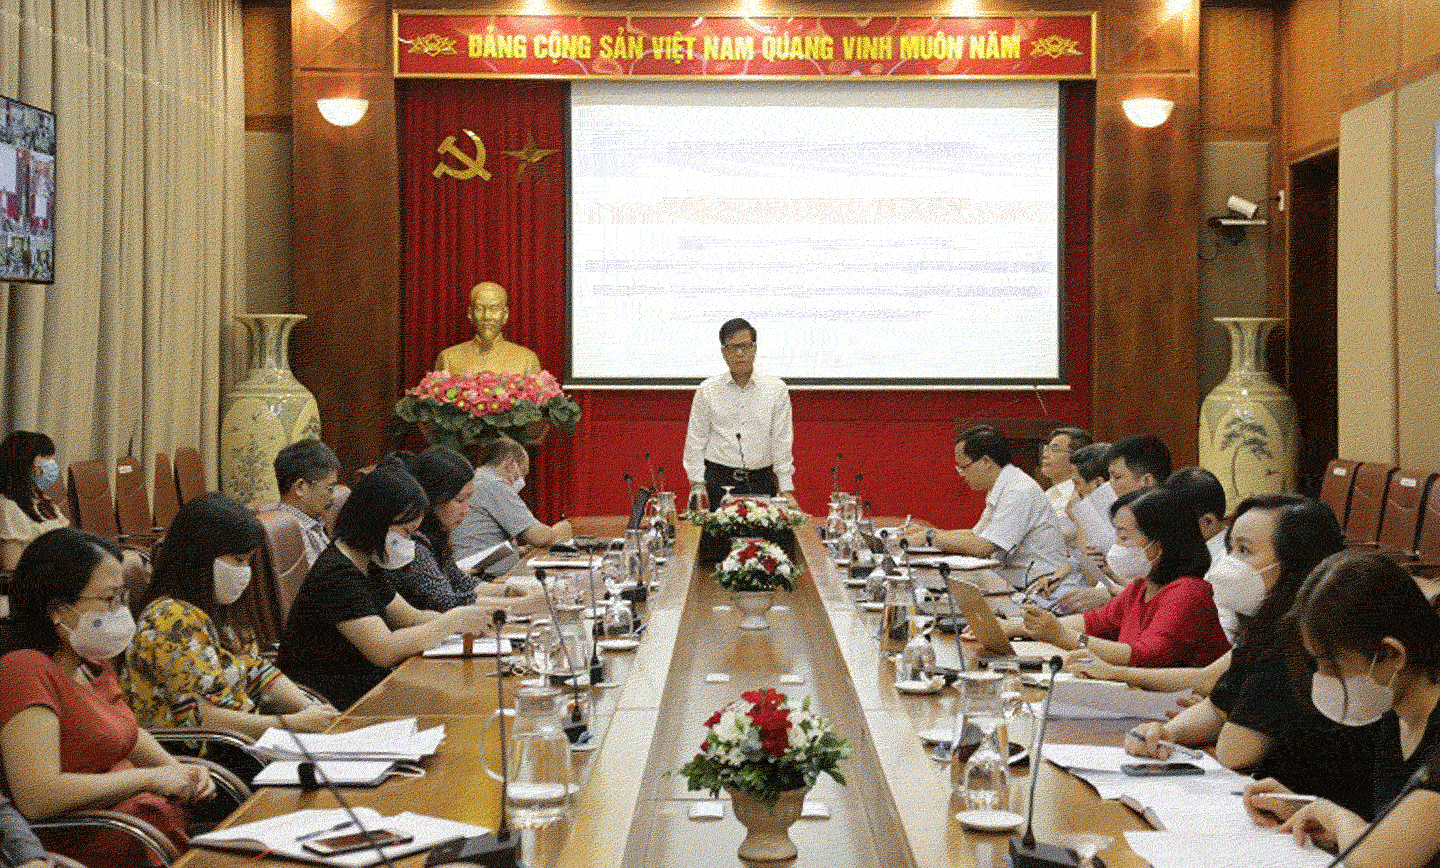 Phó Tổng Giám đốc Trần Đình Liệu phát biểu chỉ đạo tại Hội nghị triển khai chính sách hỗ trợ người lao động, người sử dụng lao động.